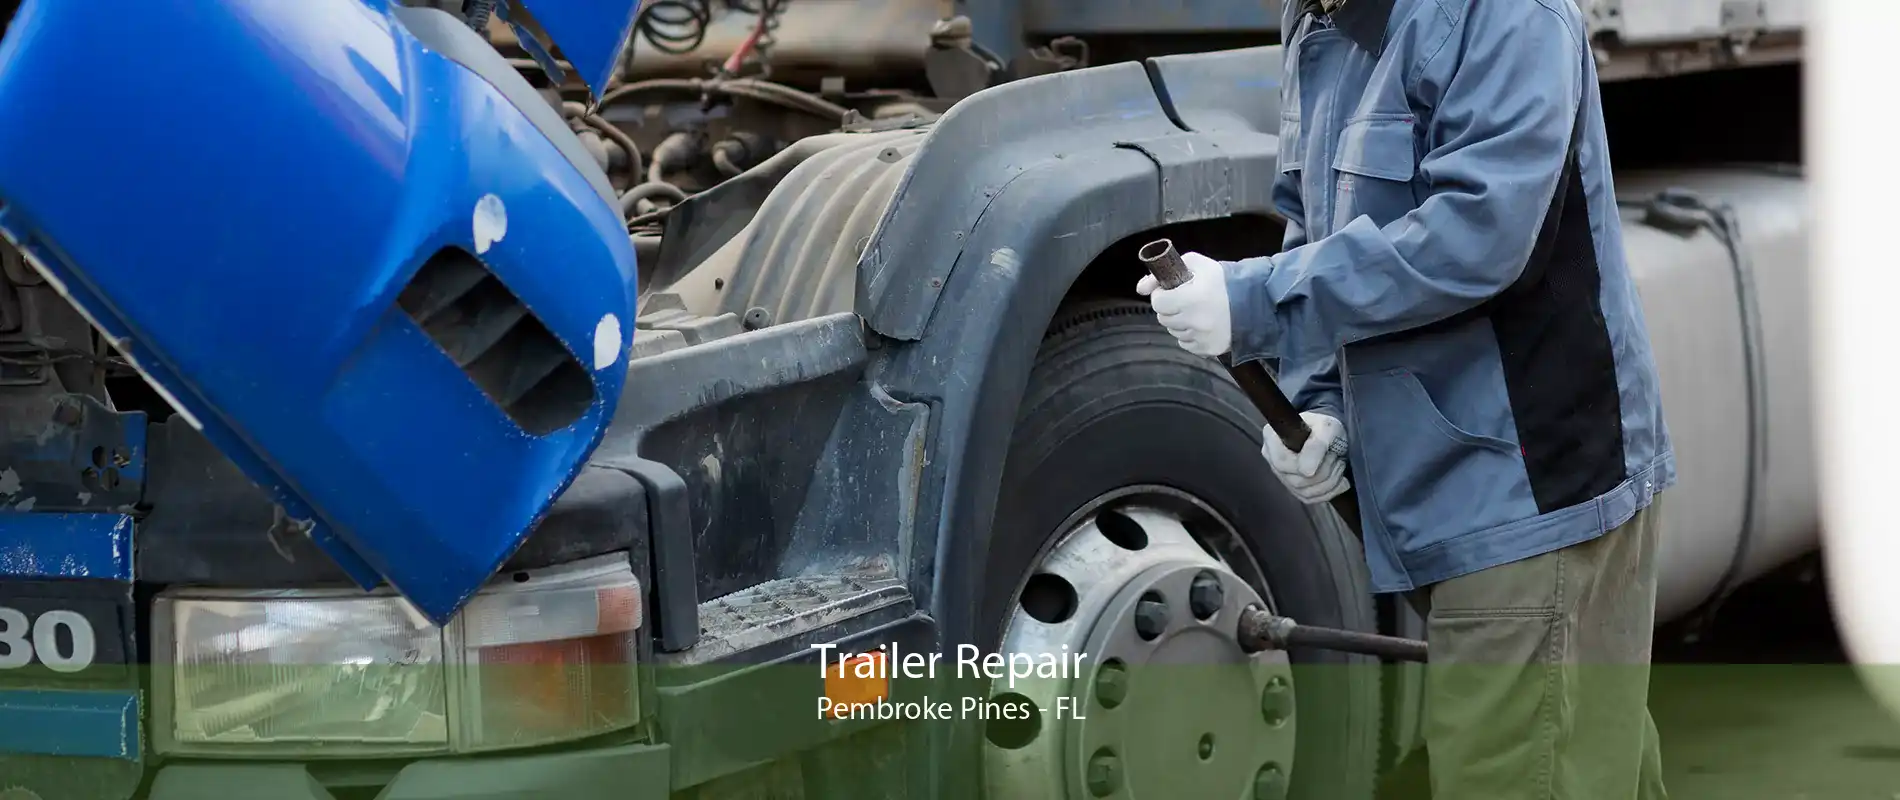 Trailer Repair Pembroke Pines - FL